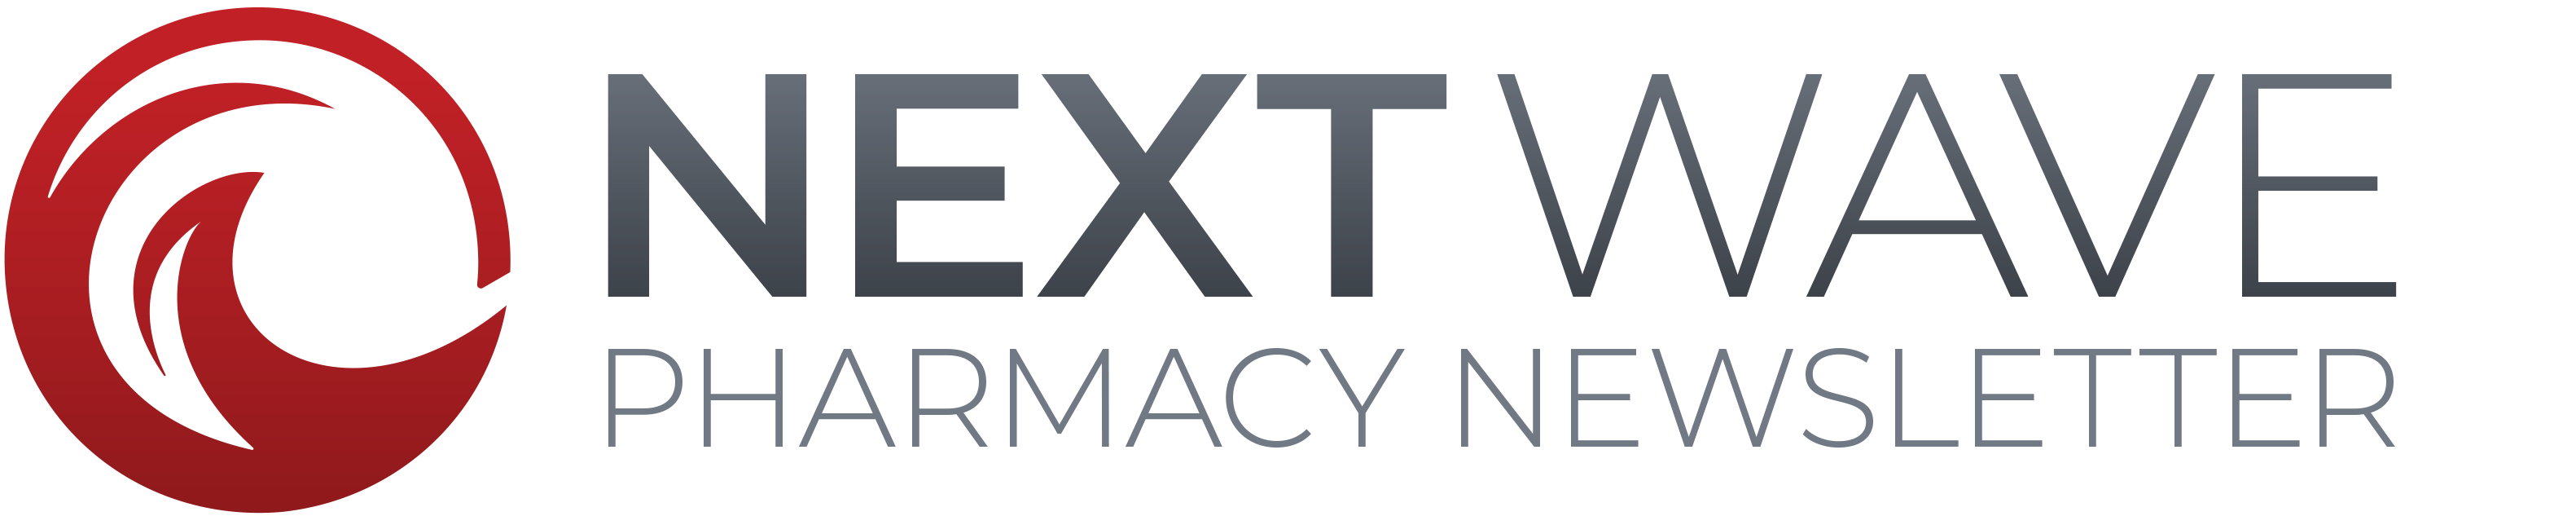 NextWave Pharmacy Newsletter logo